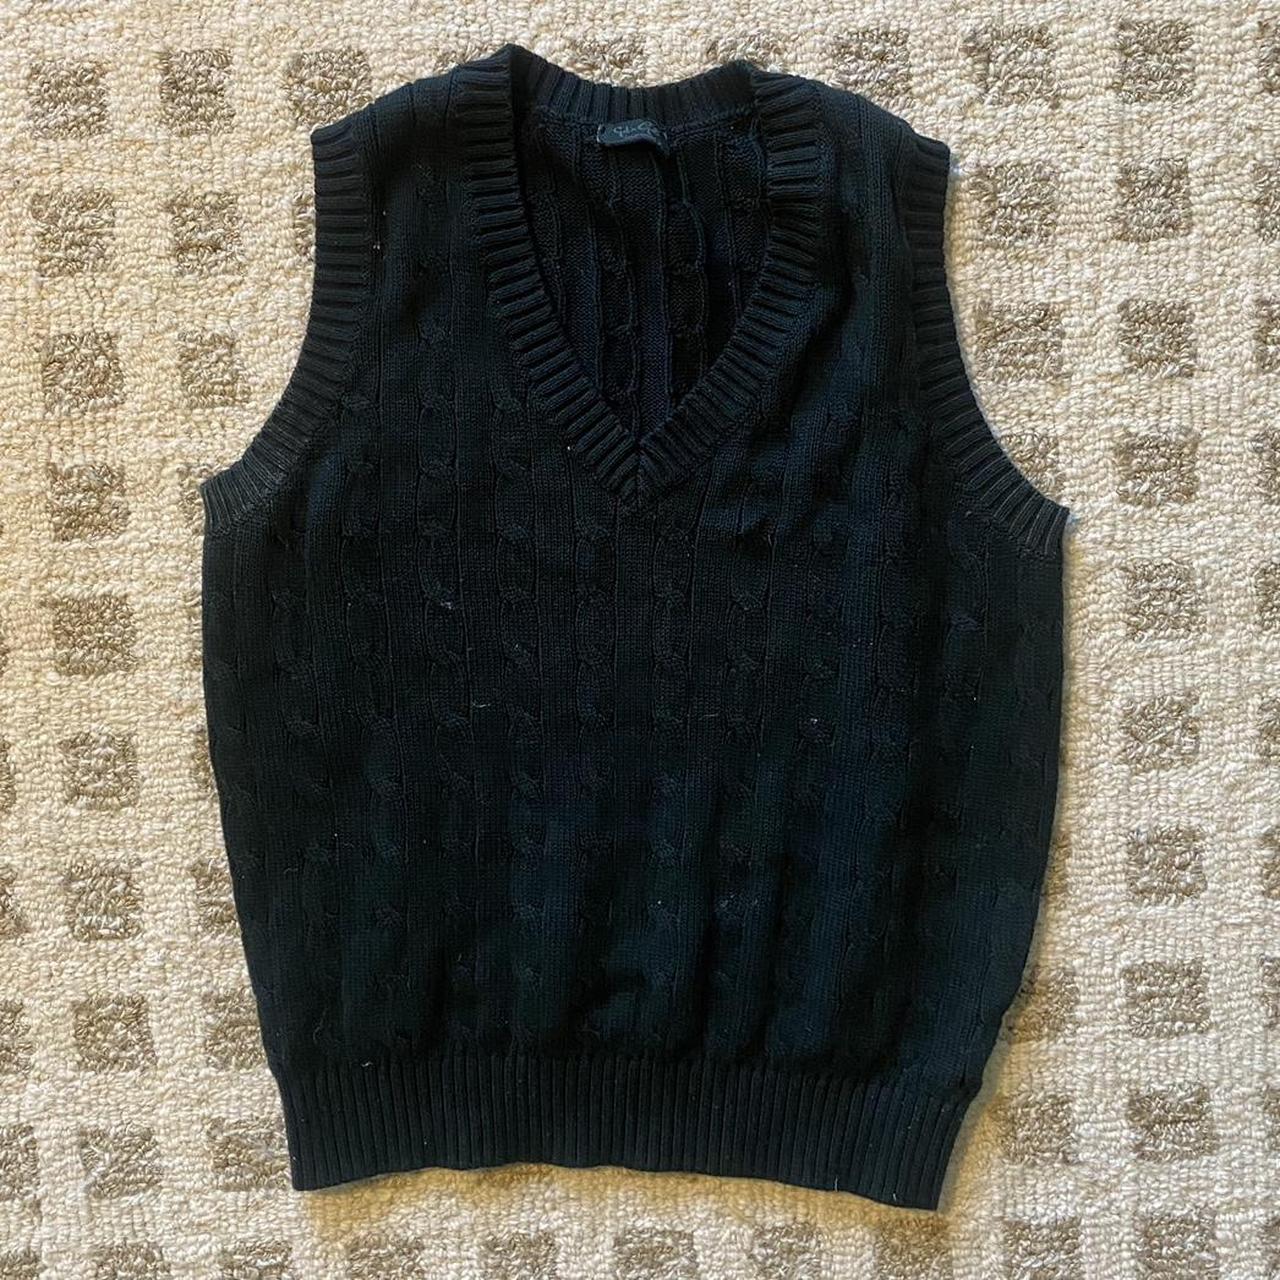 BRANDY MELVILLE Knit V-Neck Sweater Vest Sleeveless Dark Green